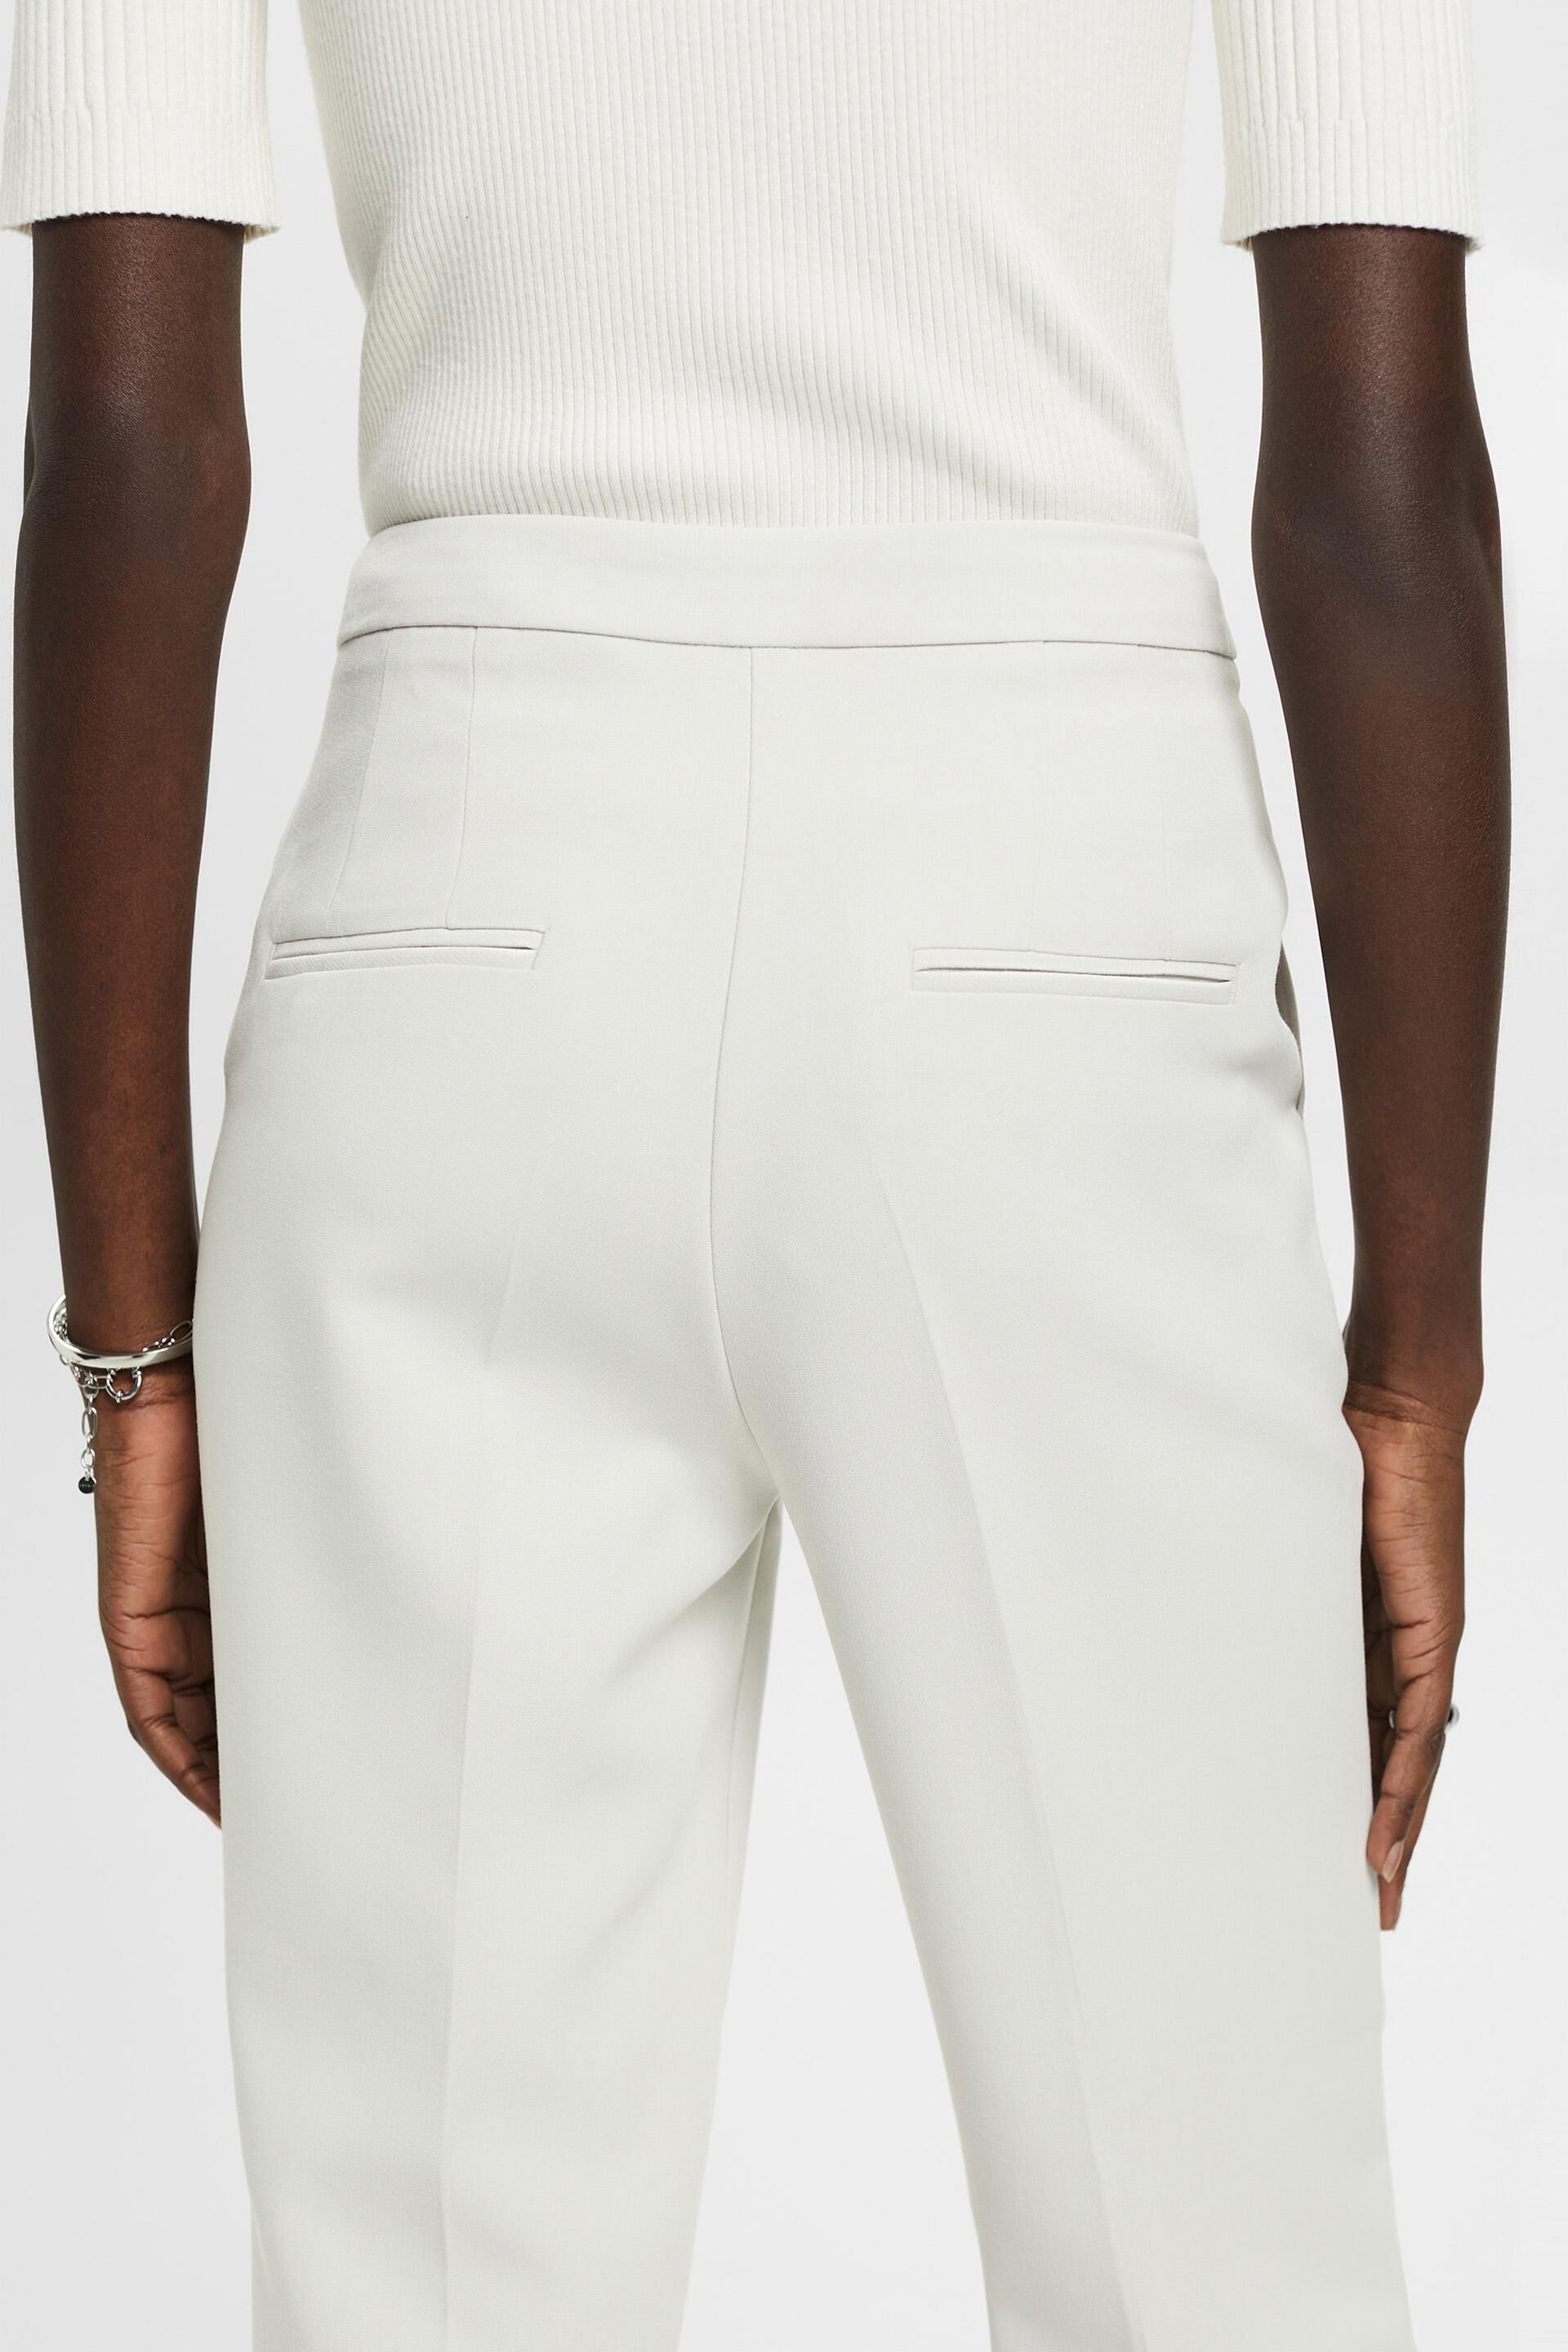 Nenette Viscose jersey trousers - Buy online on Glamest Fashion Outlet -  Glamest.com | Online Designer Fashion Outlet